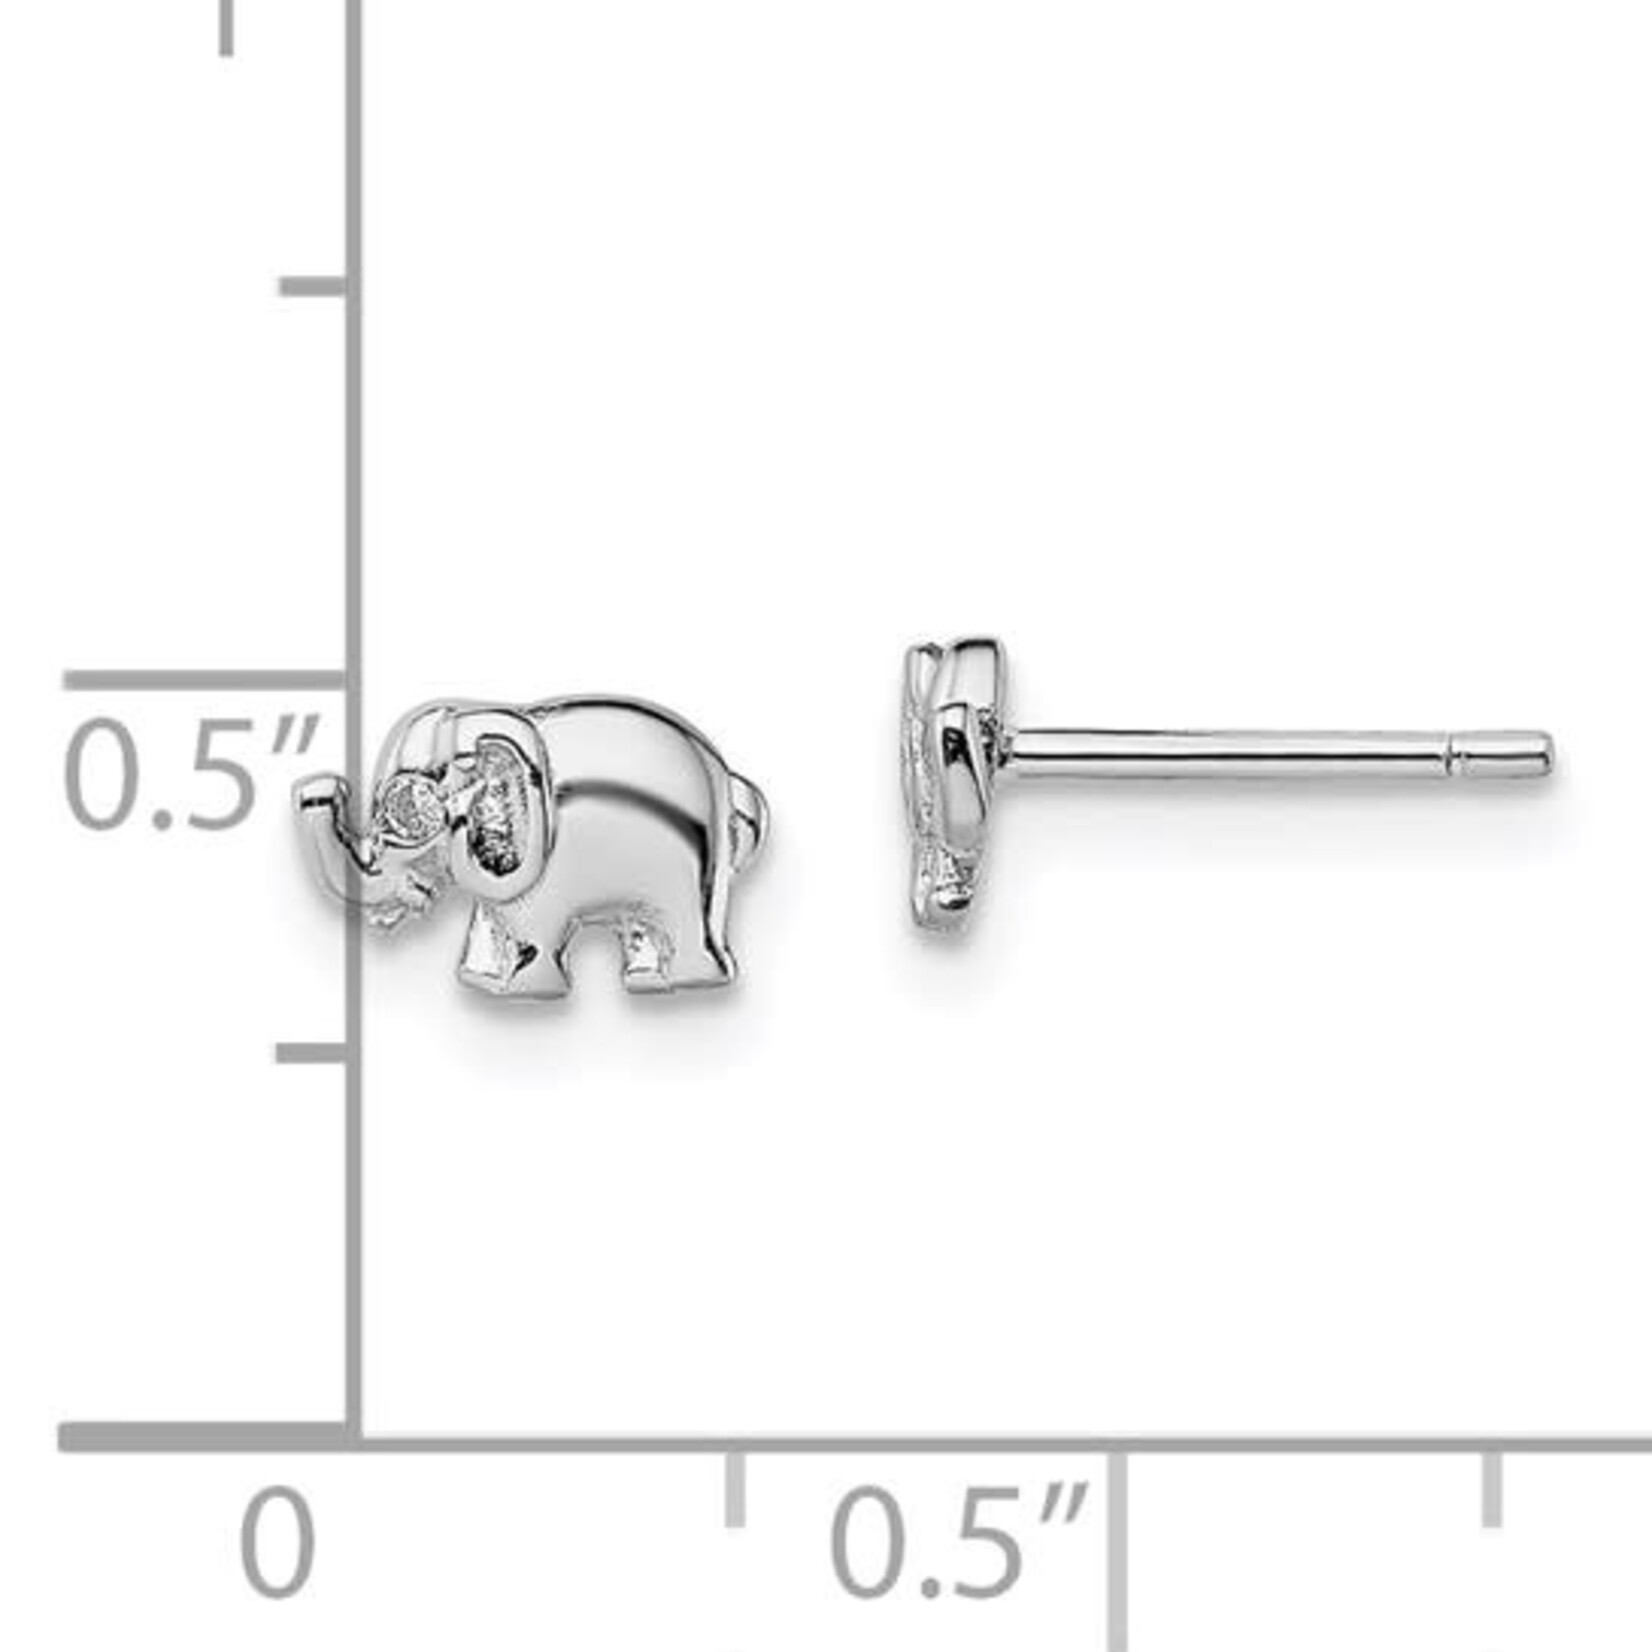 SS Elephant Stud Earrings